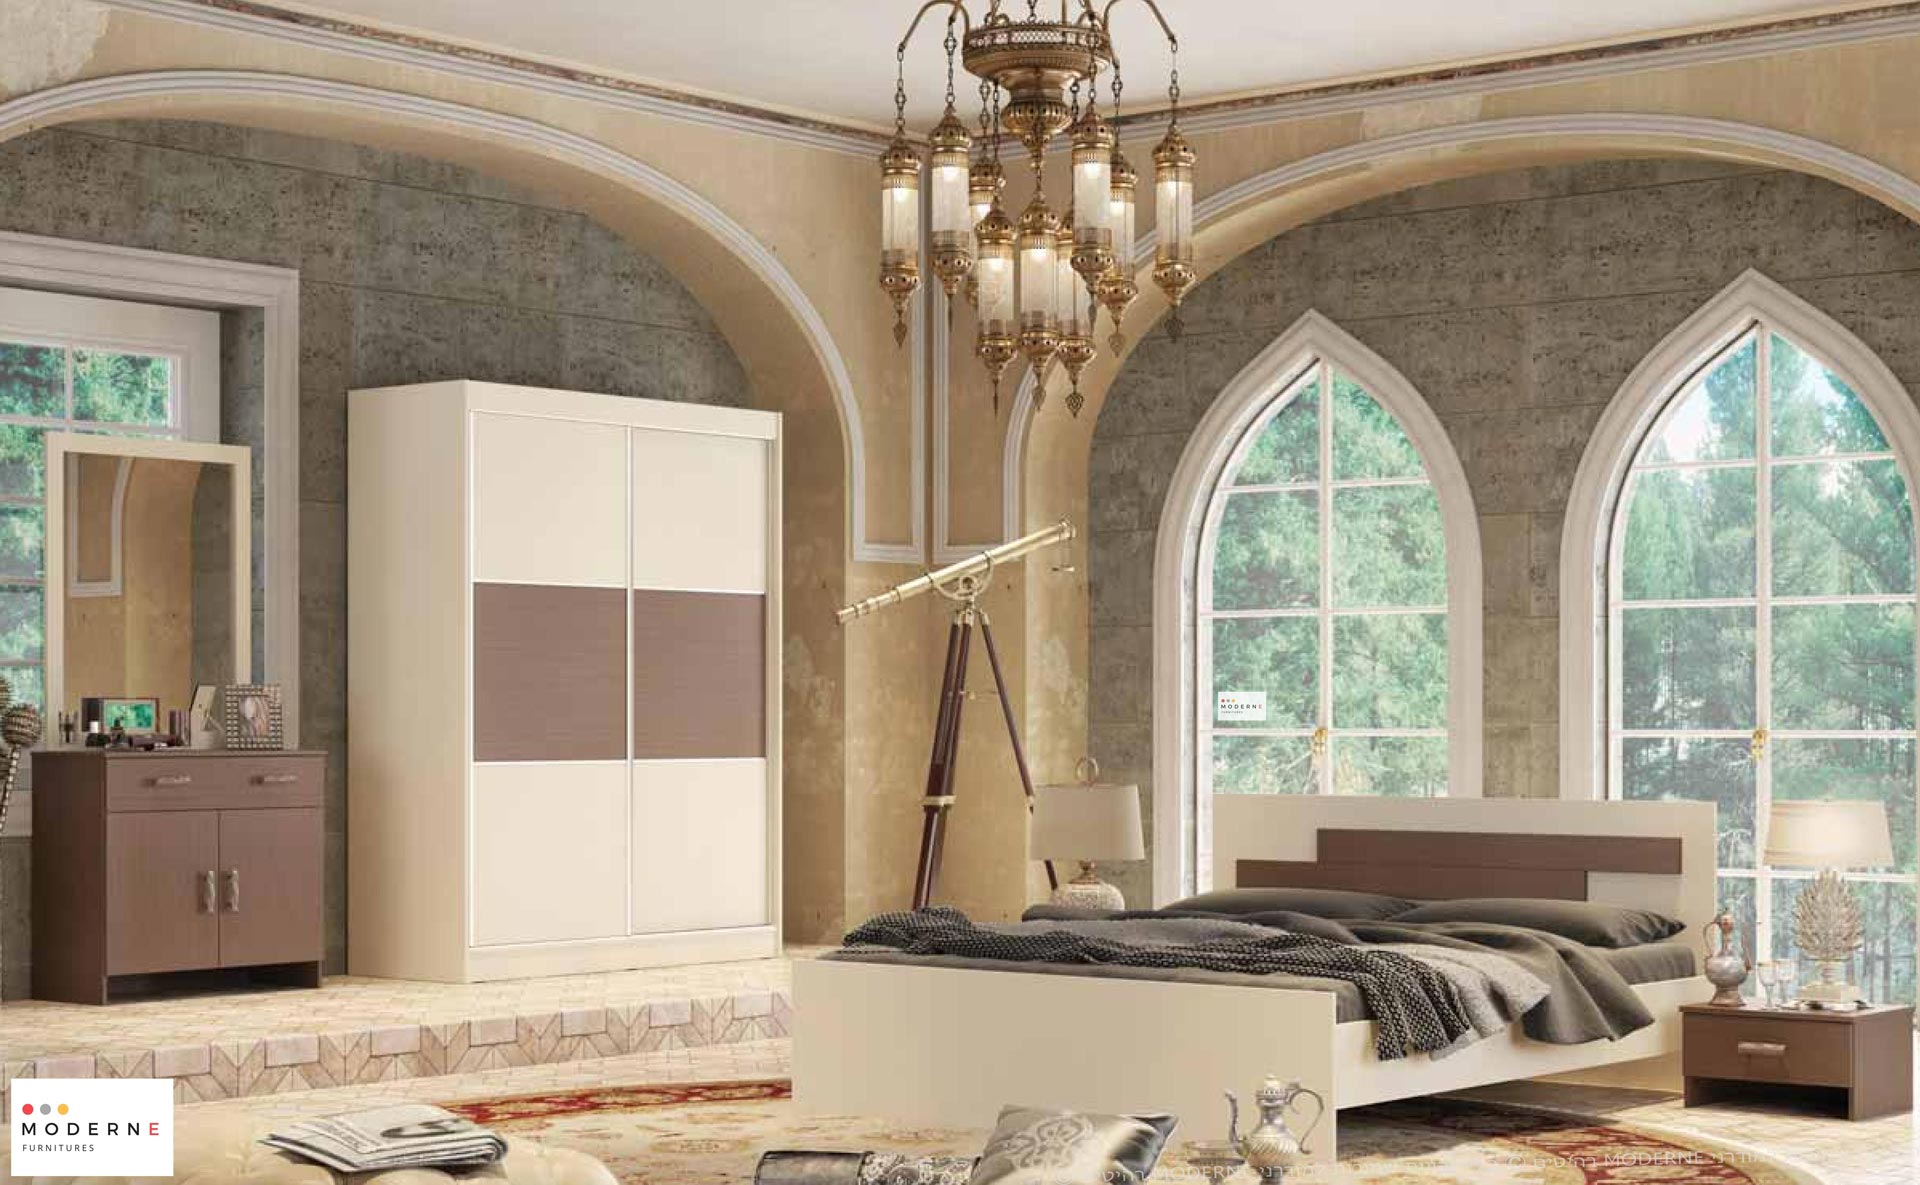 חדר שינה קומפלט במבצע דגם דיסני הכולל מיטה זוגית ,2 שידות לילה ,קומודה ומראה ,בצבע שמנת בשילוב וונגה ,נמצא באתר מודרני moderne.co.il